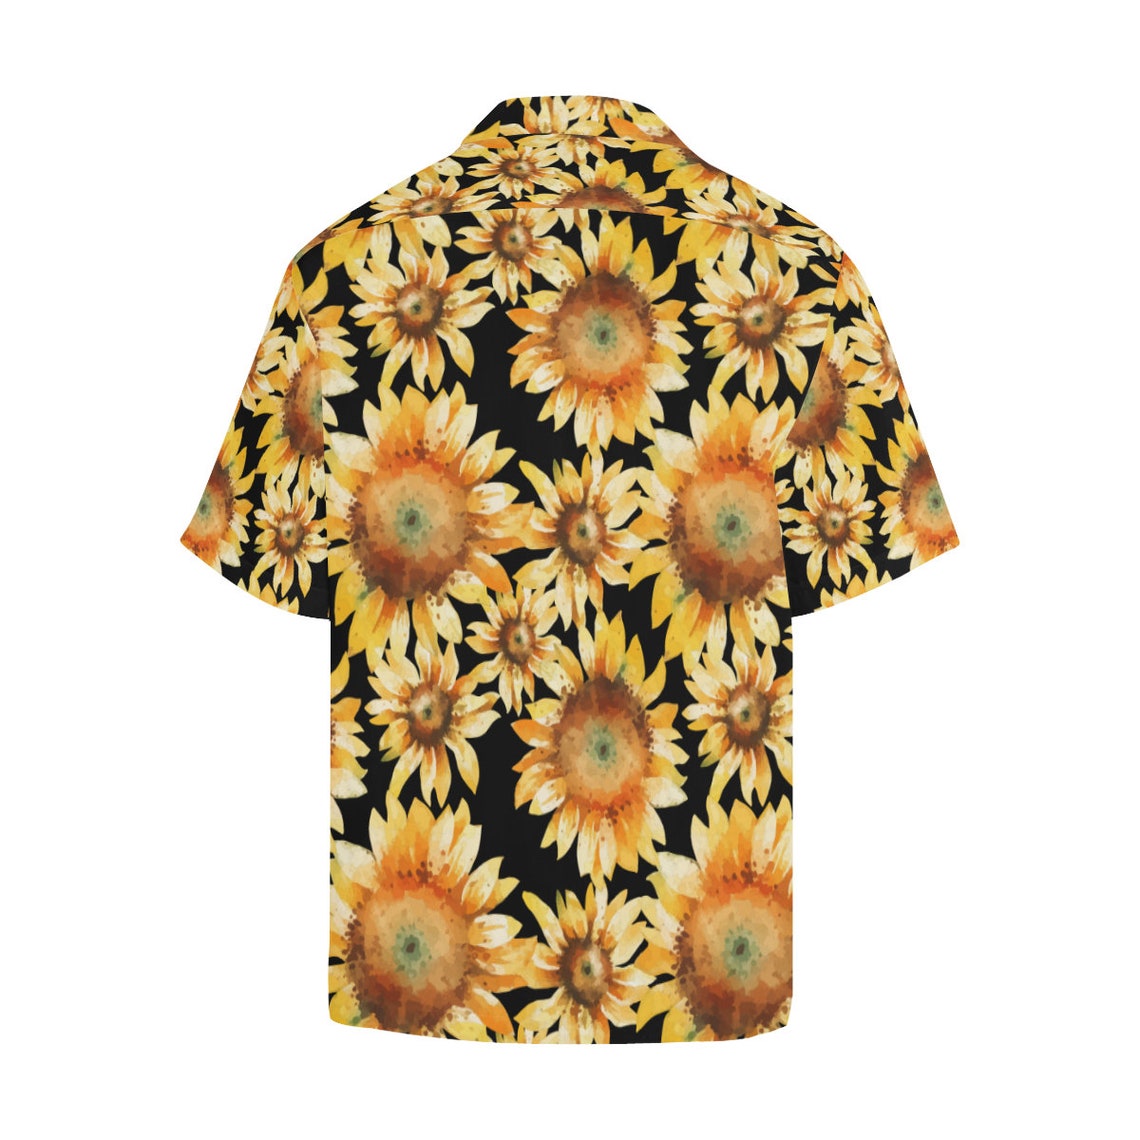 Sunflower 02 Men's All Over Print Hawaiian Shirt Beach | Etsy